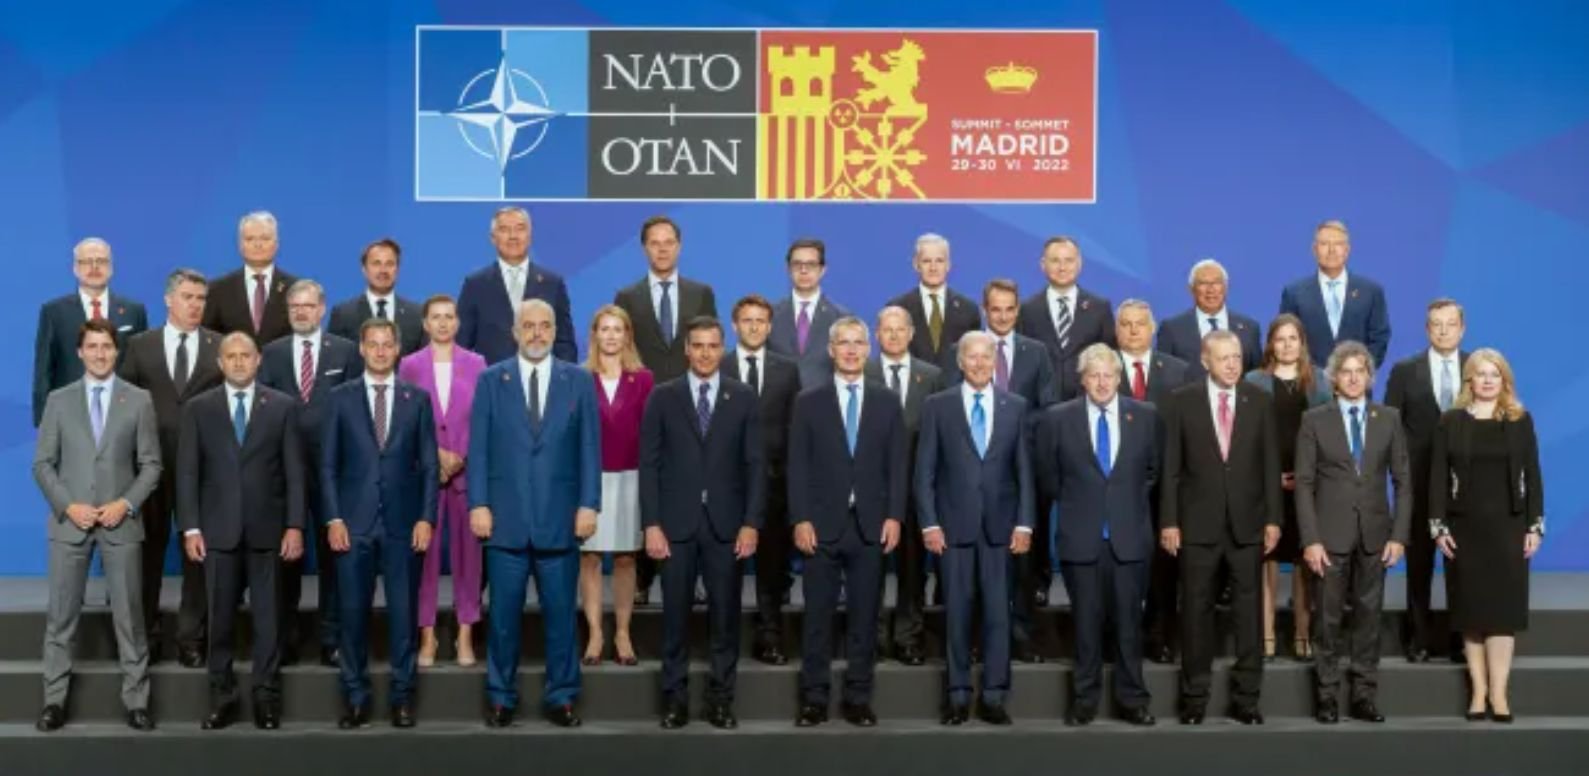 Шок на срещата на върха на НАТО в Мадрид! Лидерите откриха руска следа на масите си и... СНИМКА